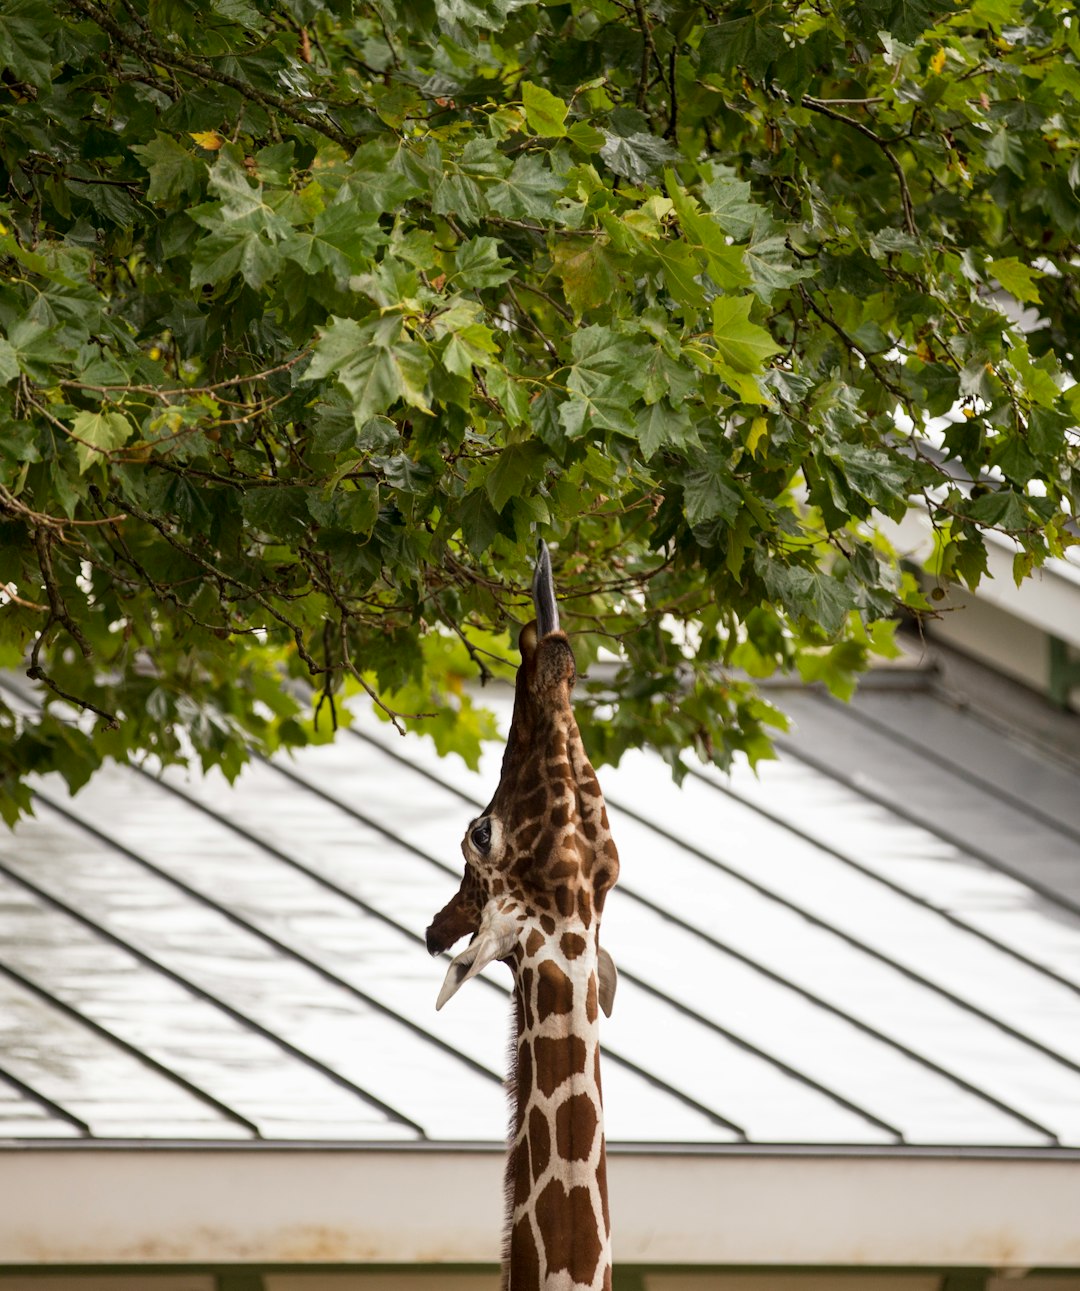 giraffe eating tree leaves during daytime